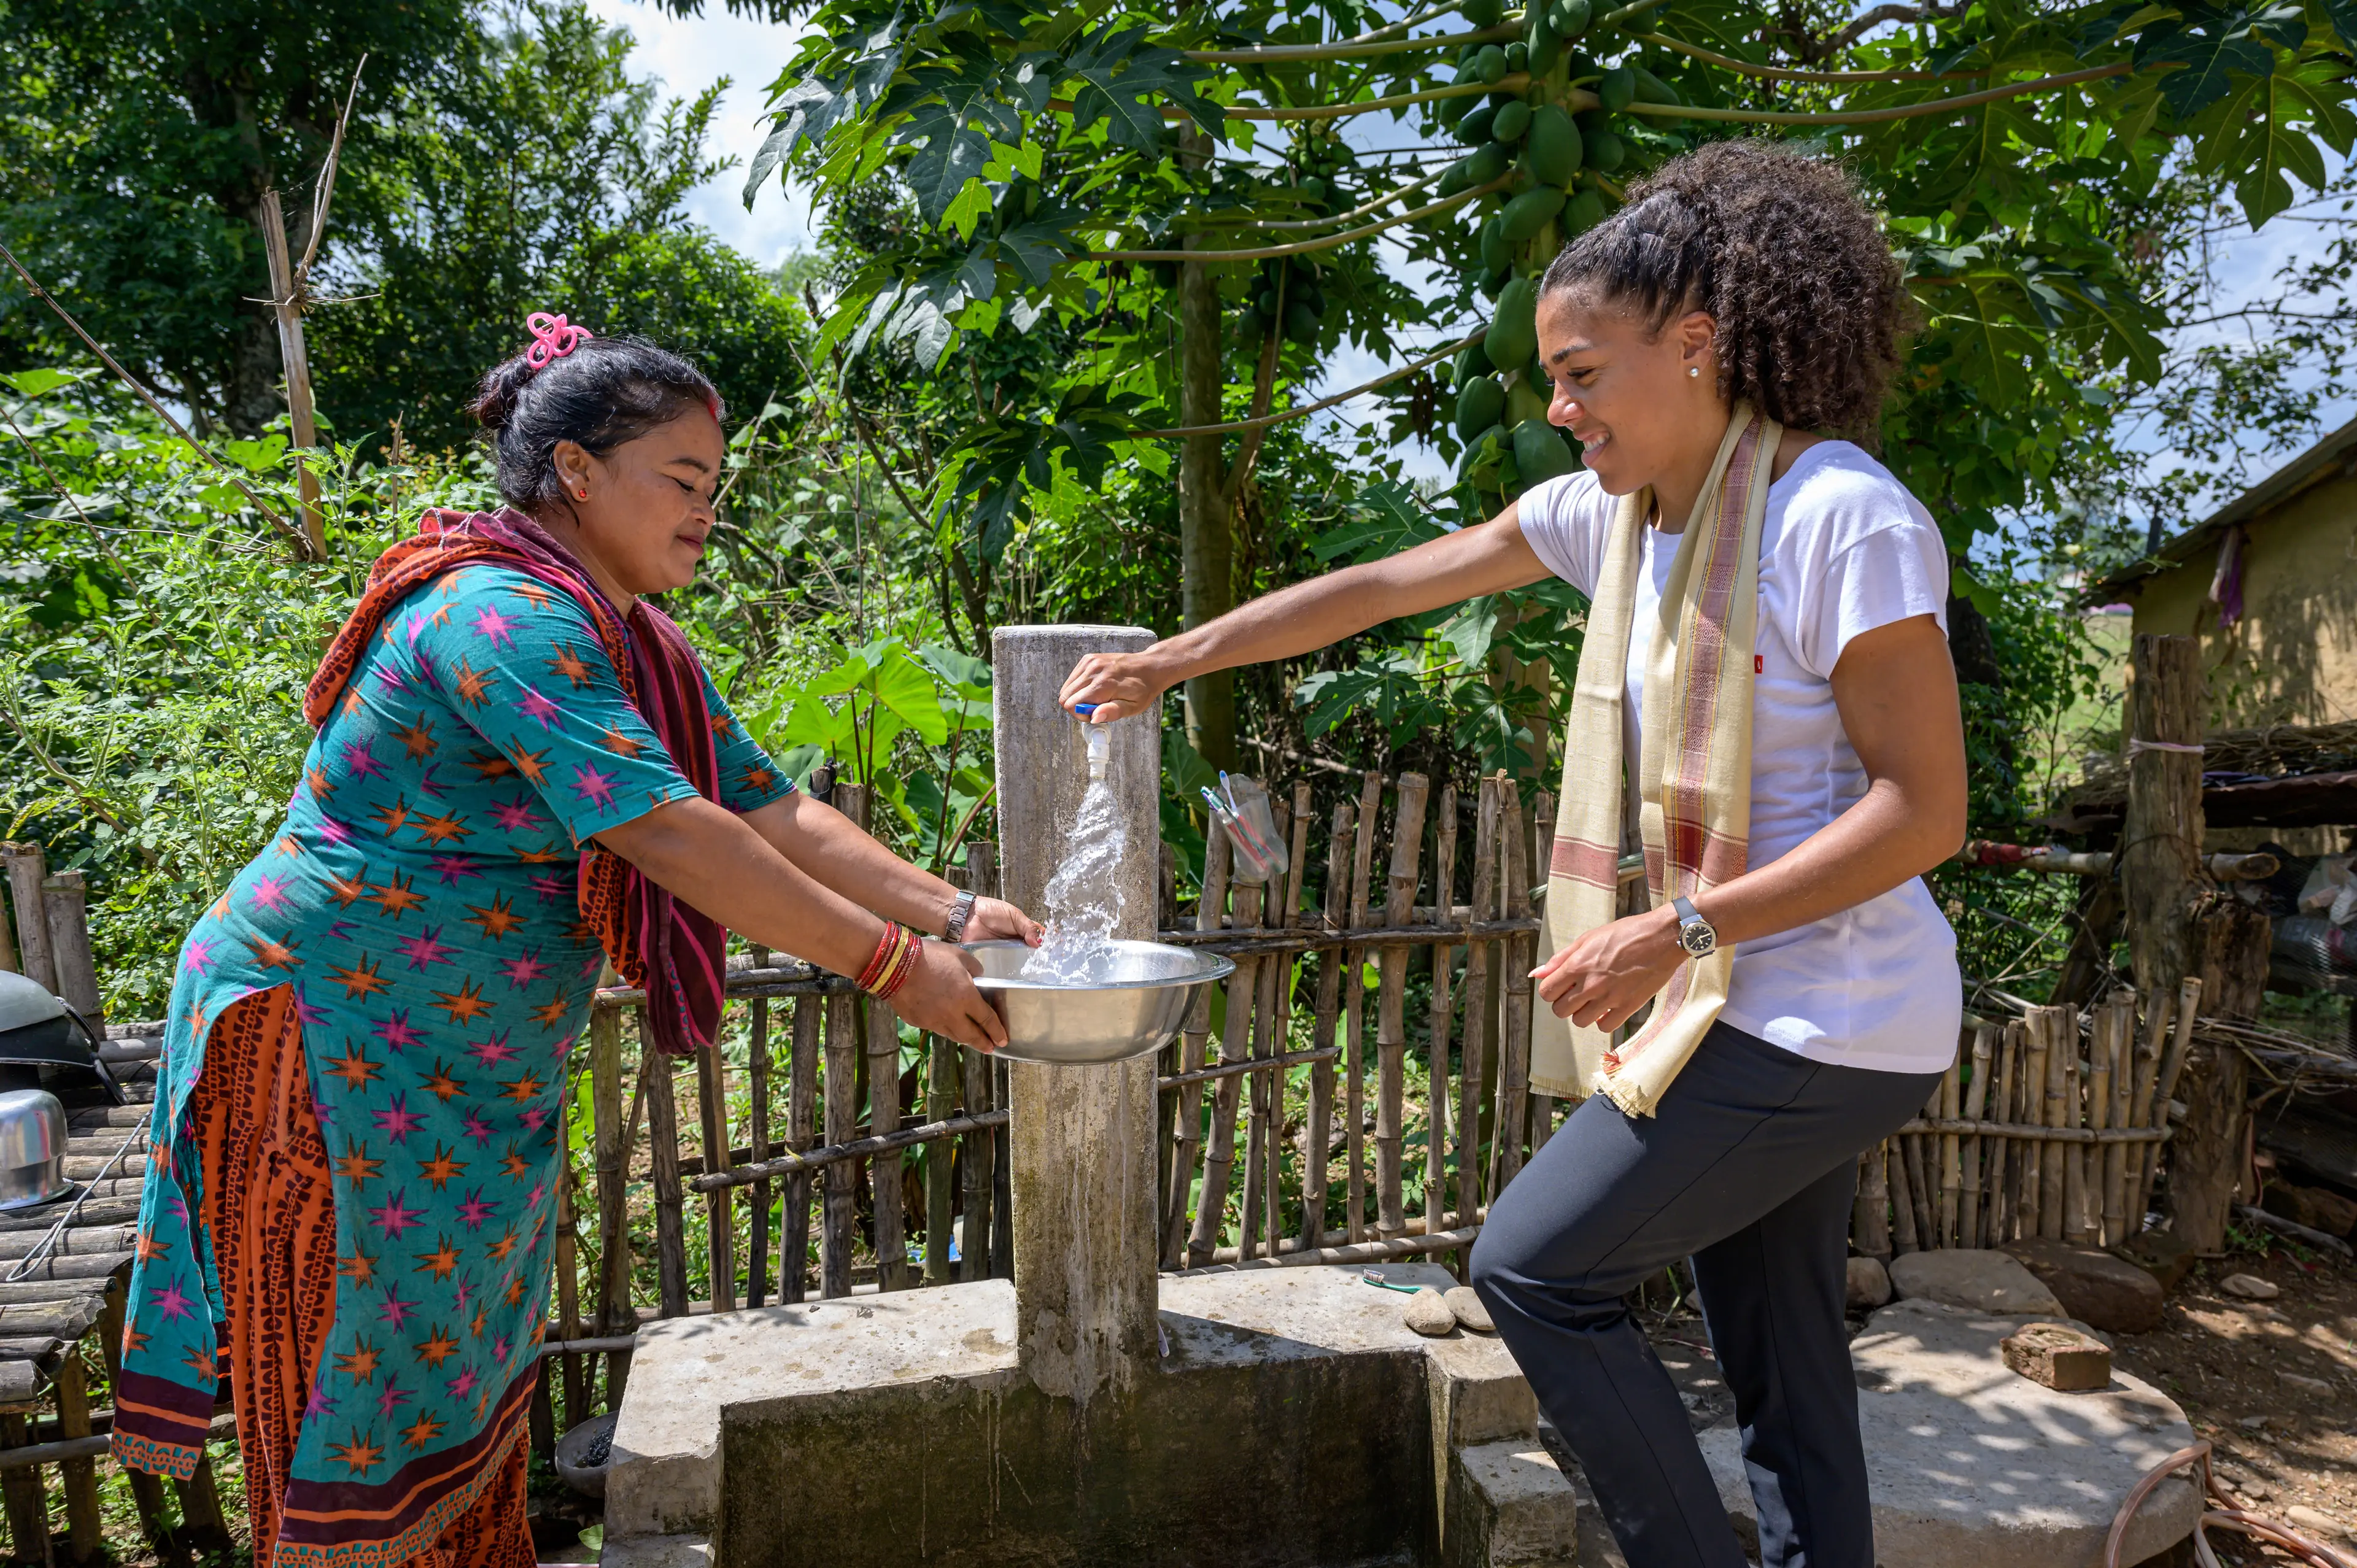 Eine bunt gekleidete Frau und Mujinga Kambundji stehen um einen Wasserhahn im Freien. Mujinga Kambundji hat eine Hand auf dem Wasserhahn, aus dem Wasser fließt. Im Hintergrund ein grüner Garten